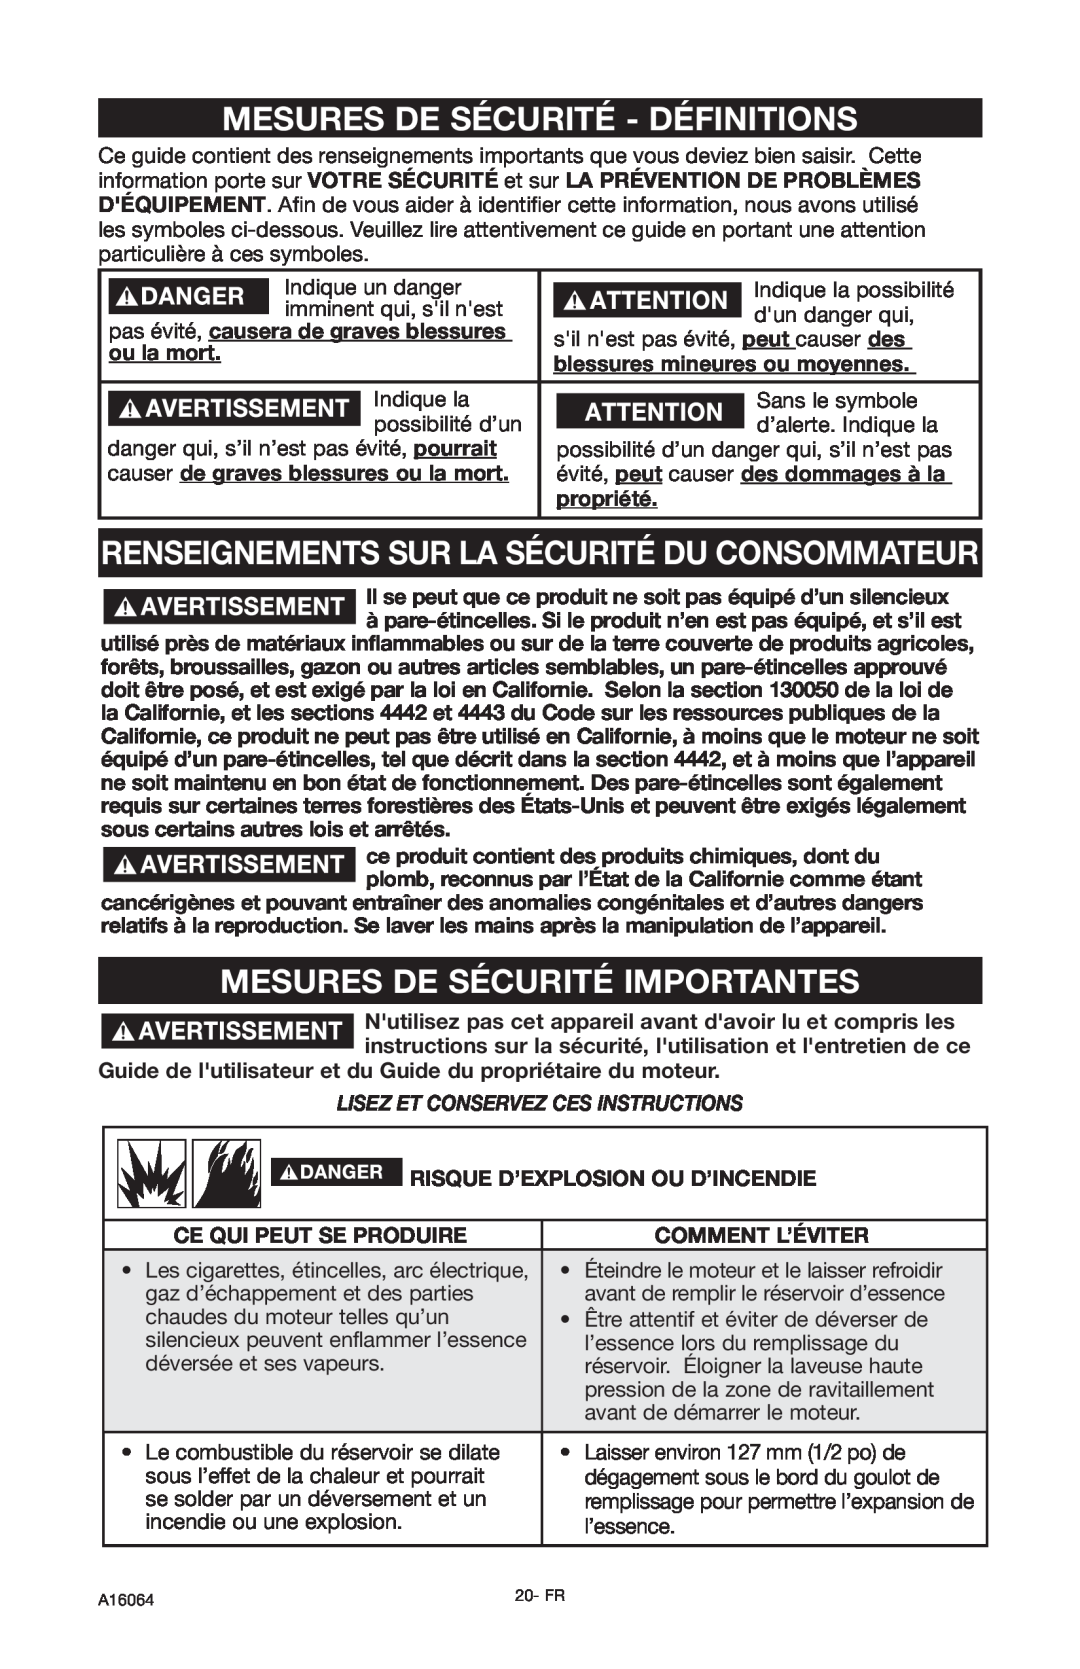 DeVillbiss Air Power Company A16064 Mesures De Sécurité - Définitions, Renseignements Sur La Sécurité Du Consommateur 